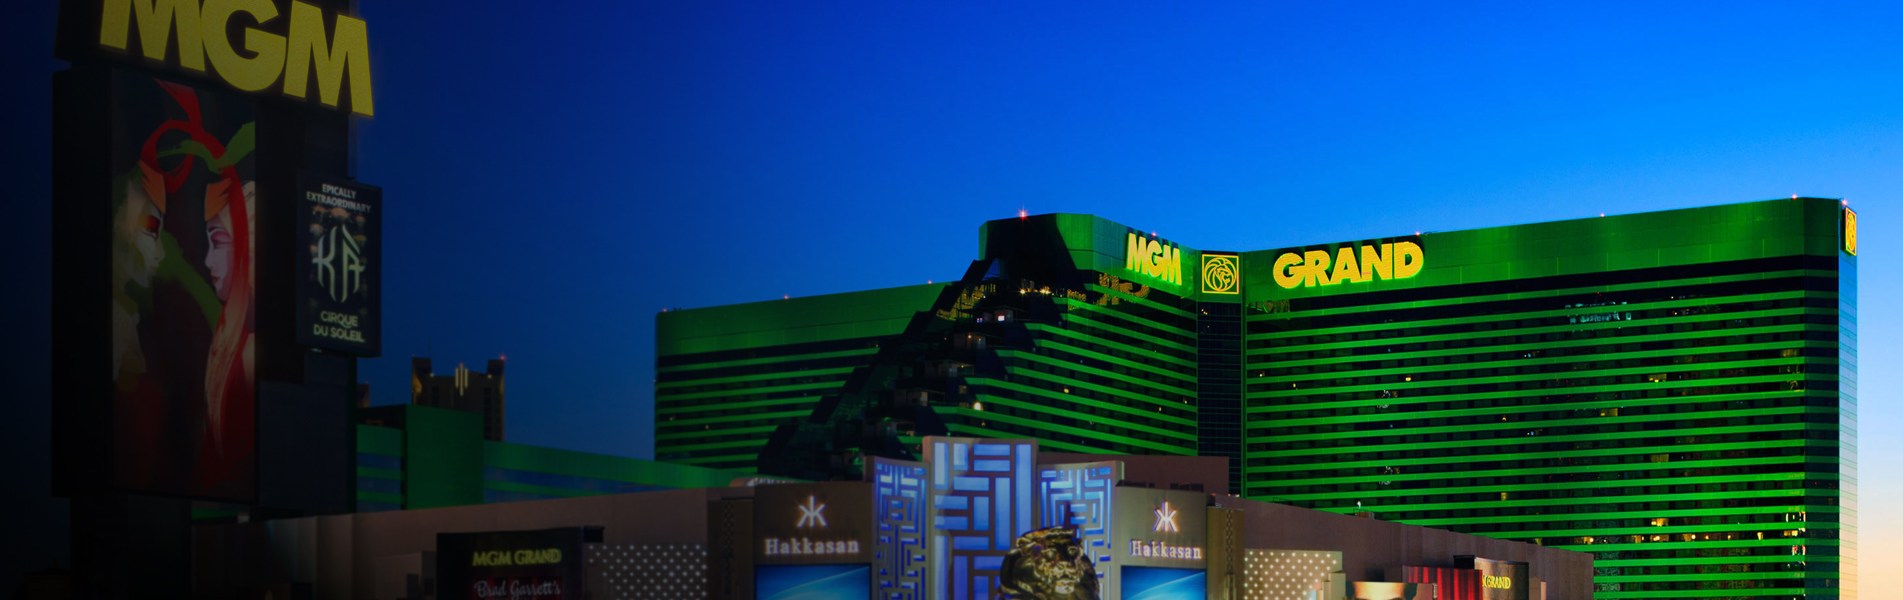 MGM Grand Casino Las Vegas 1